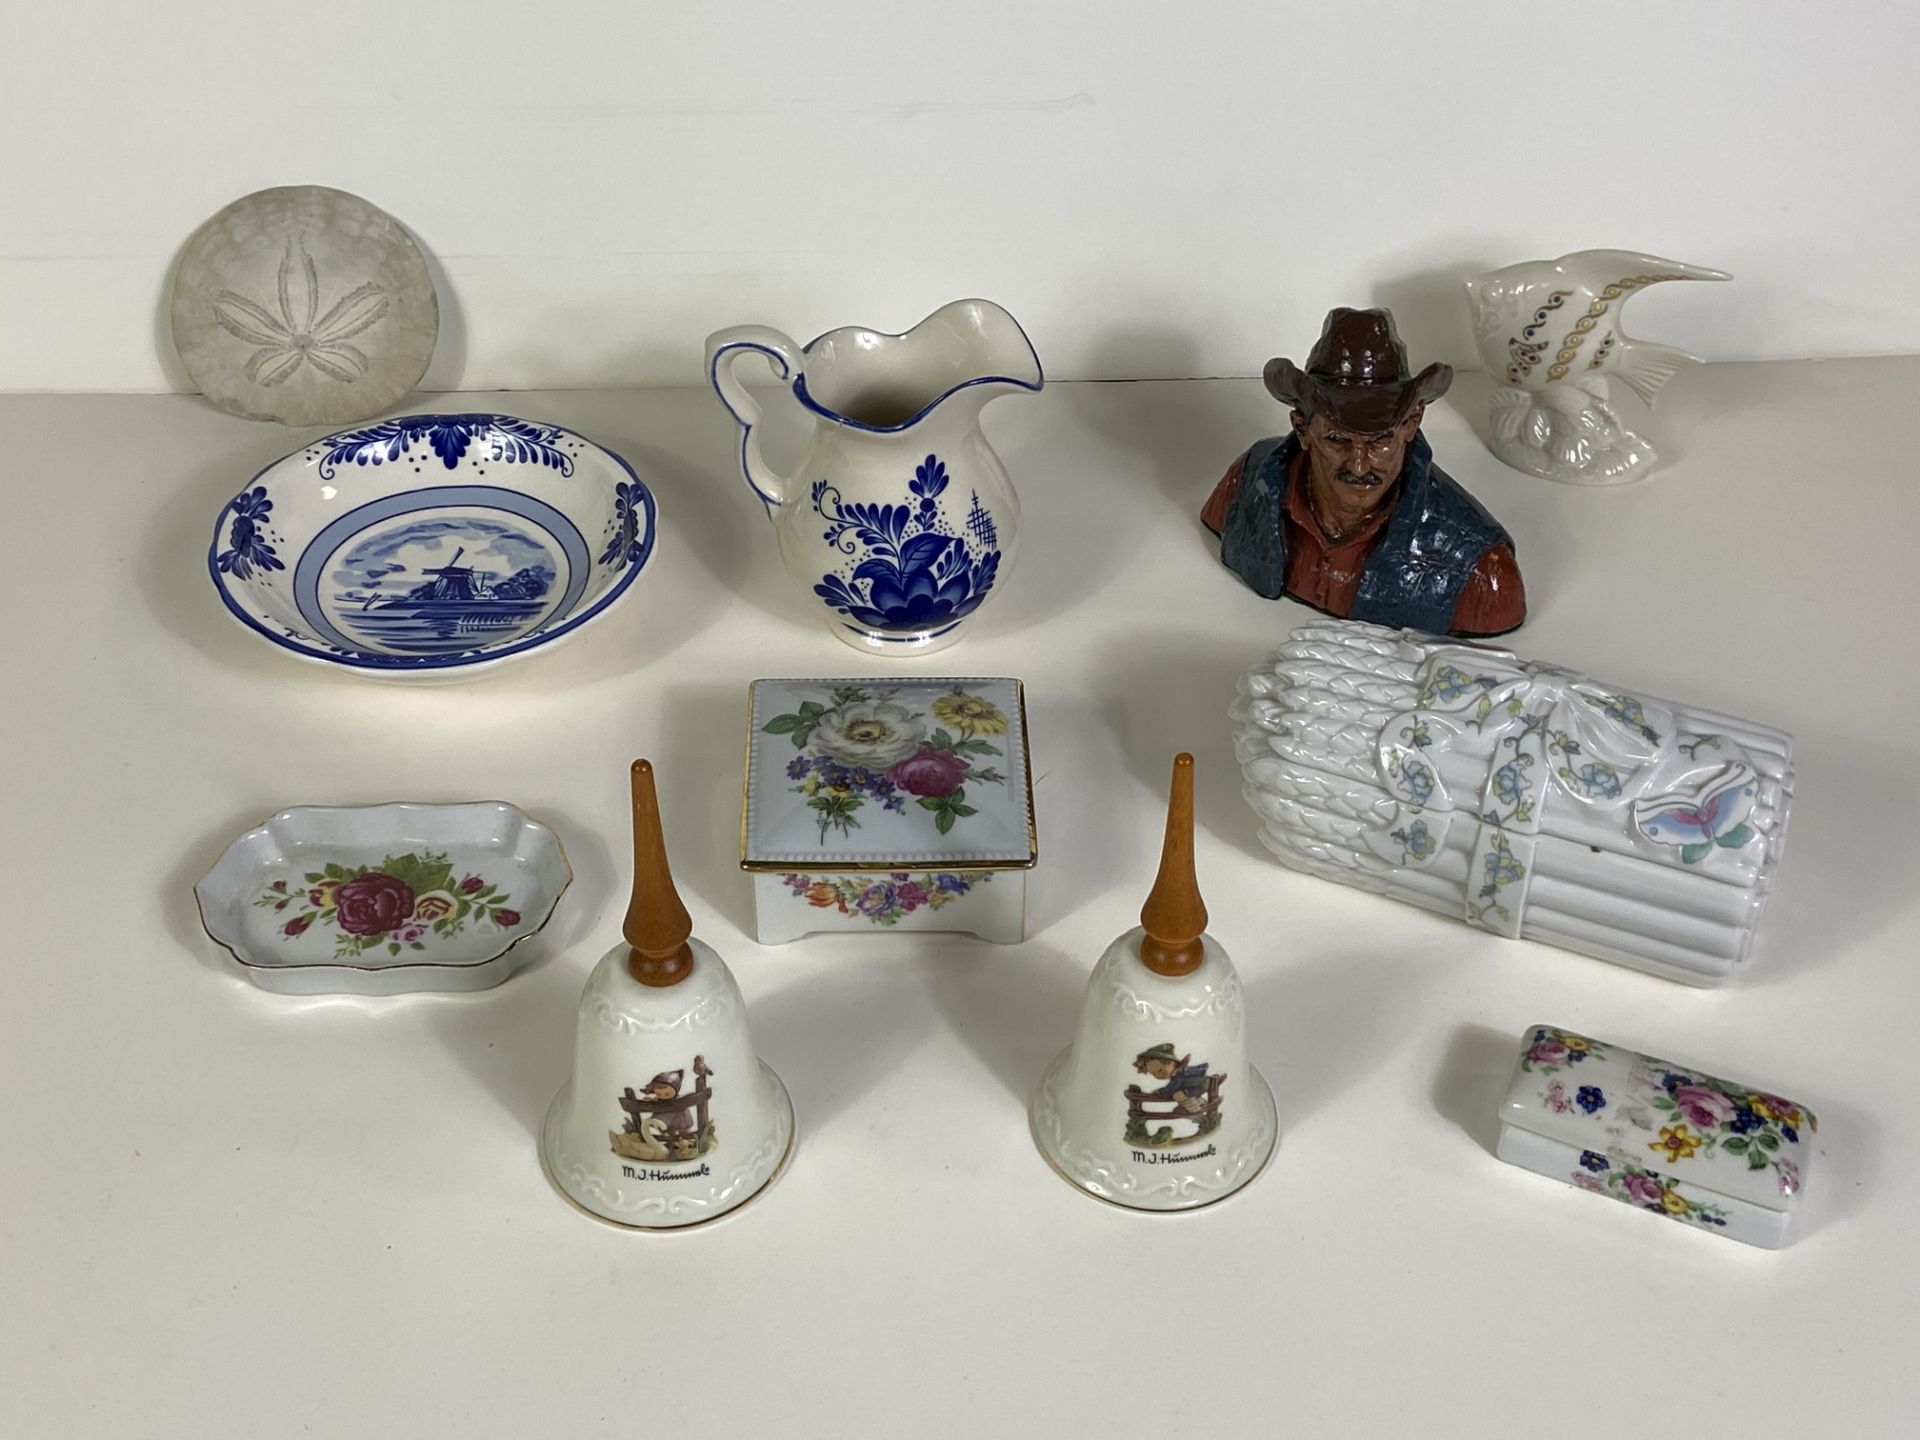 11 Porcelain Figures, 2 MJ Hummel Bells, Elizabeth Arden, Delta Blue, Sand Dollar, Etc